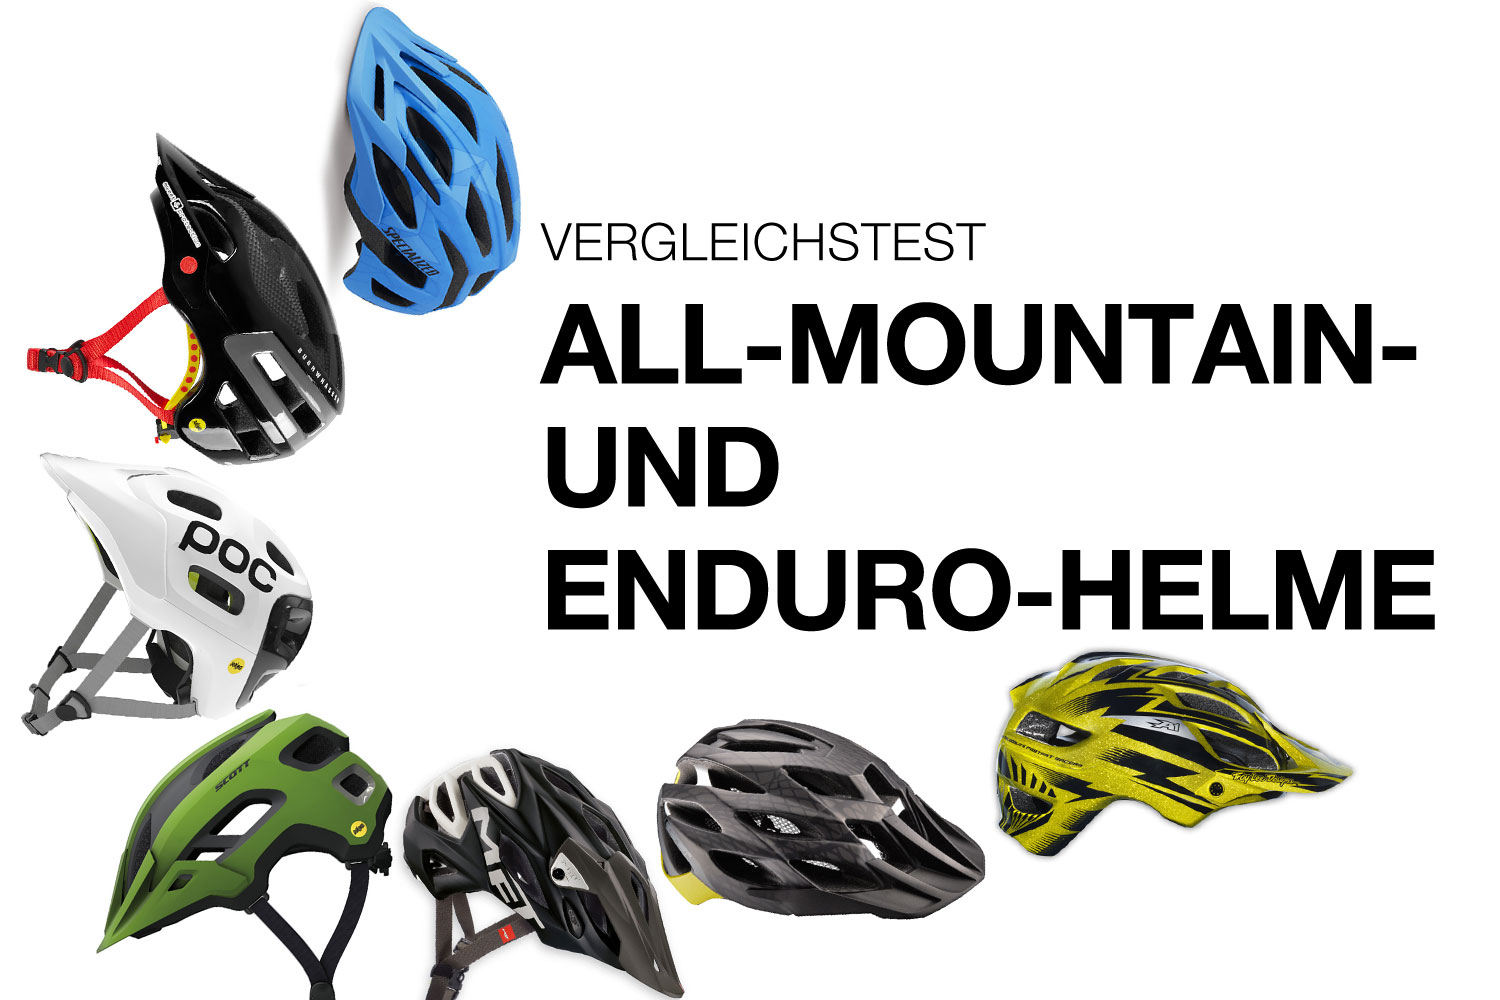 Vergleichstest Helme: 7 All-Mountain- und Enduro-Helme